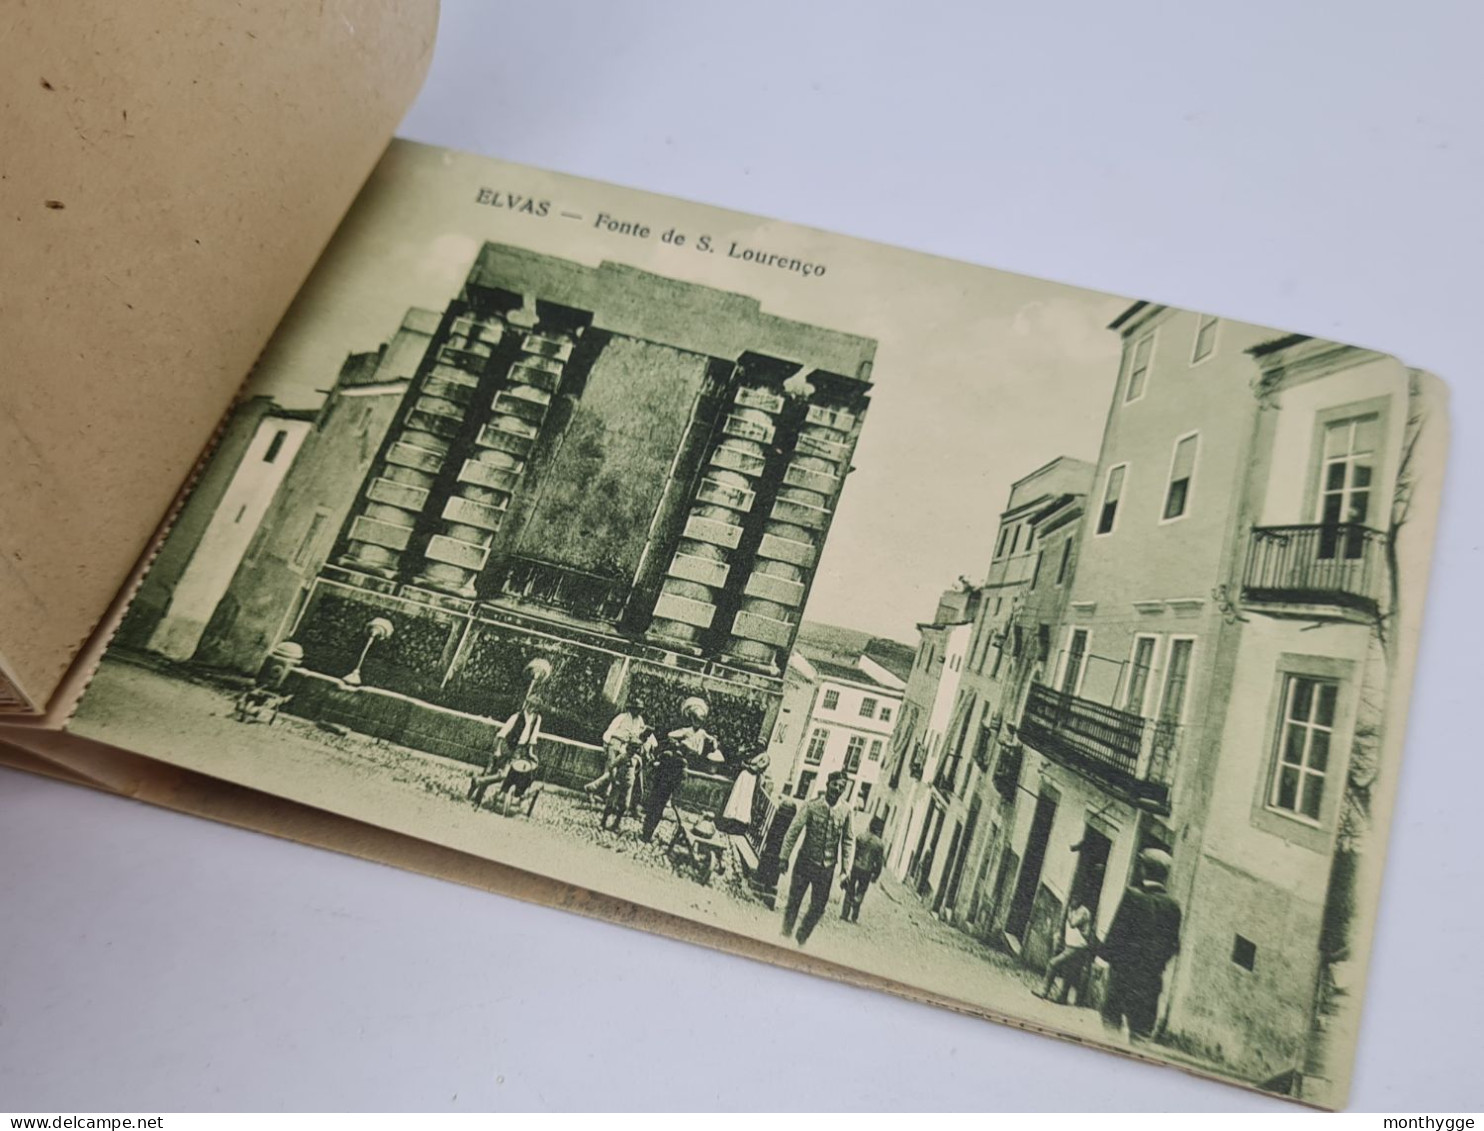 Antique Postcard Portugal Elvas Colecção de 10 postais edição Luiz Samuel